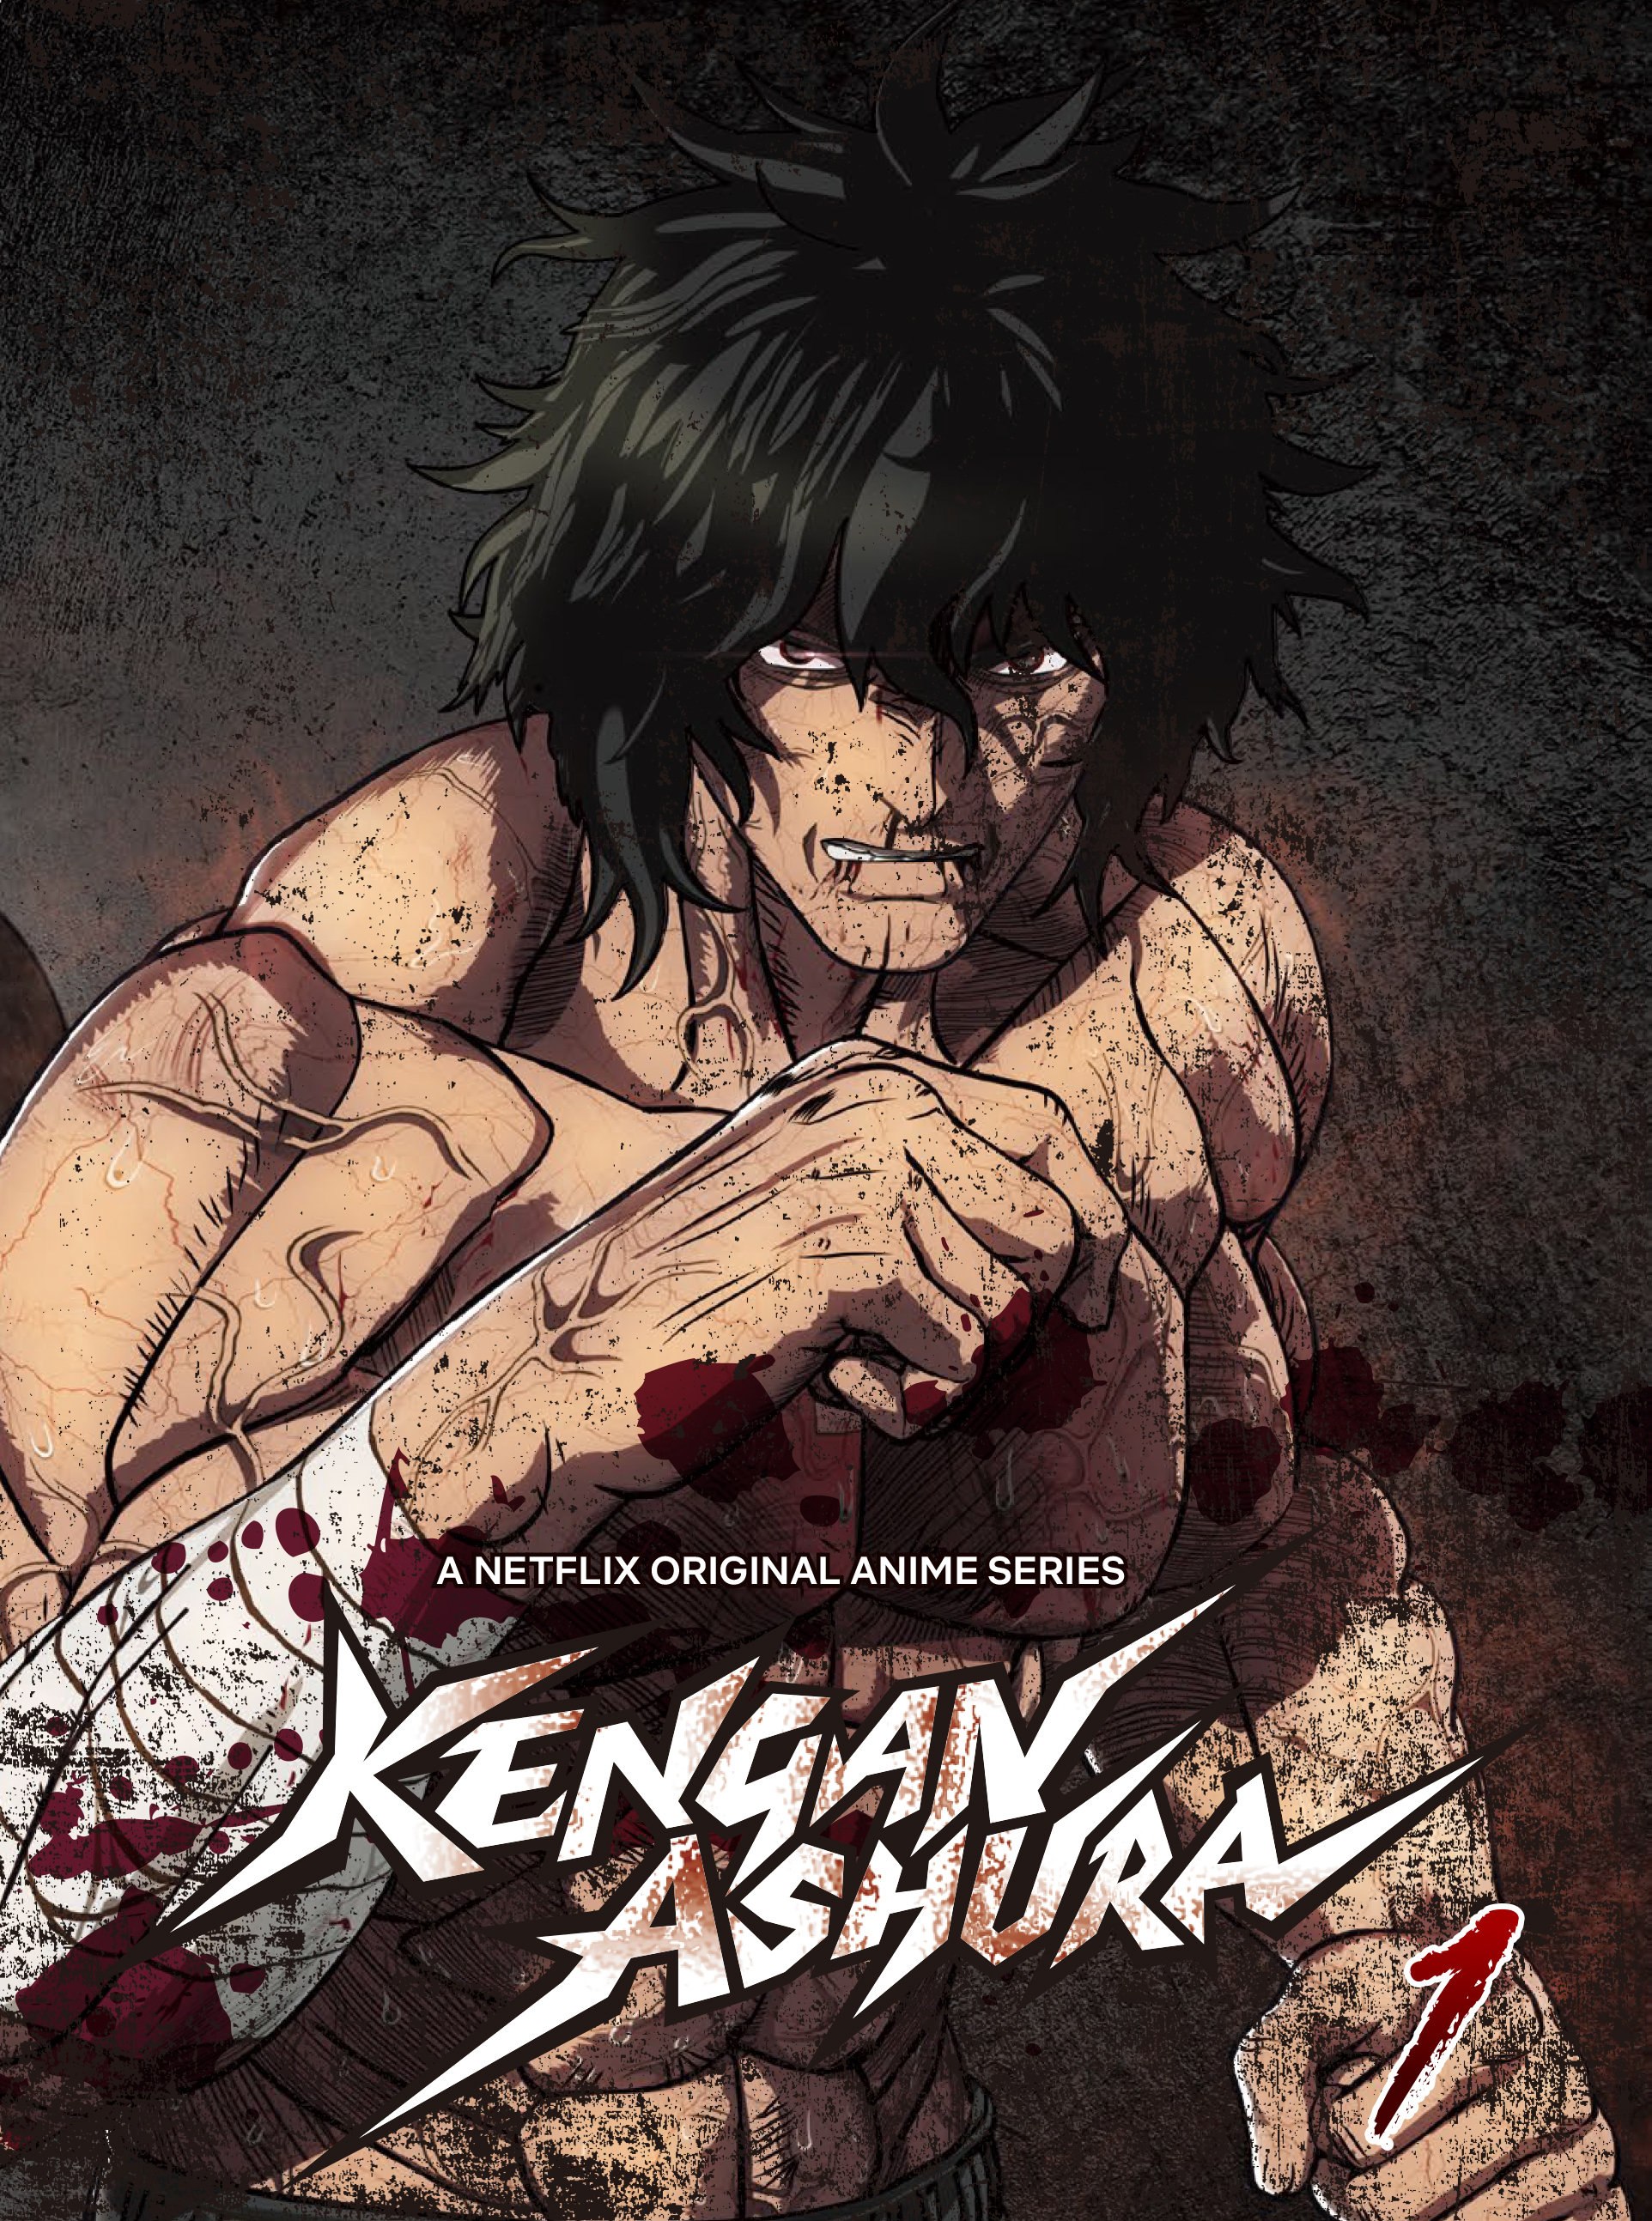 Kengan Ashura Season 3 Release Date and More